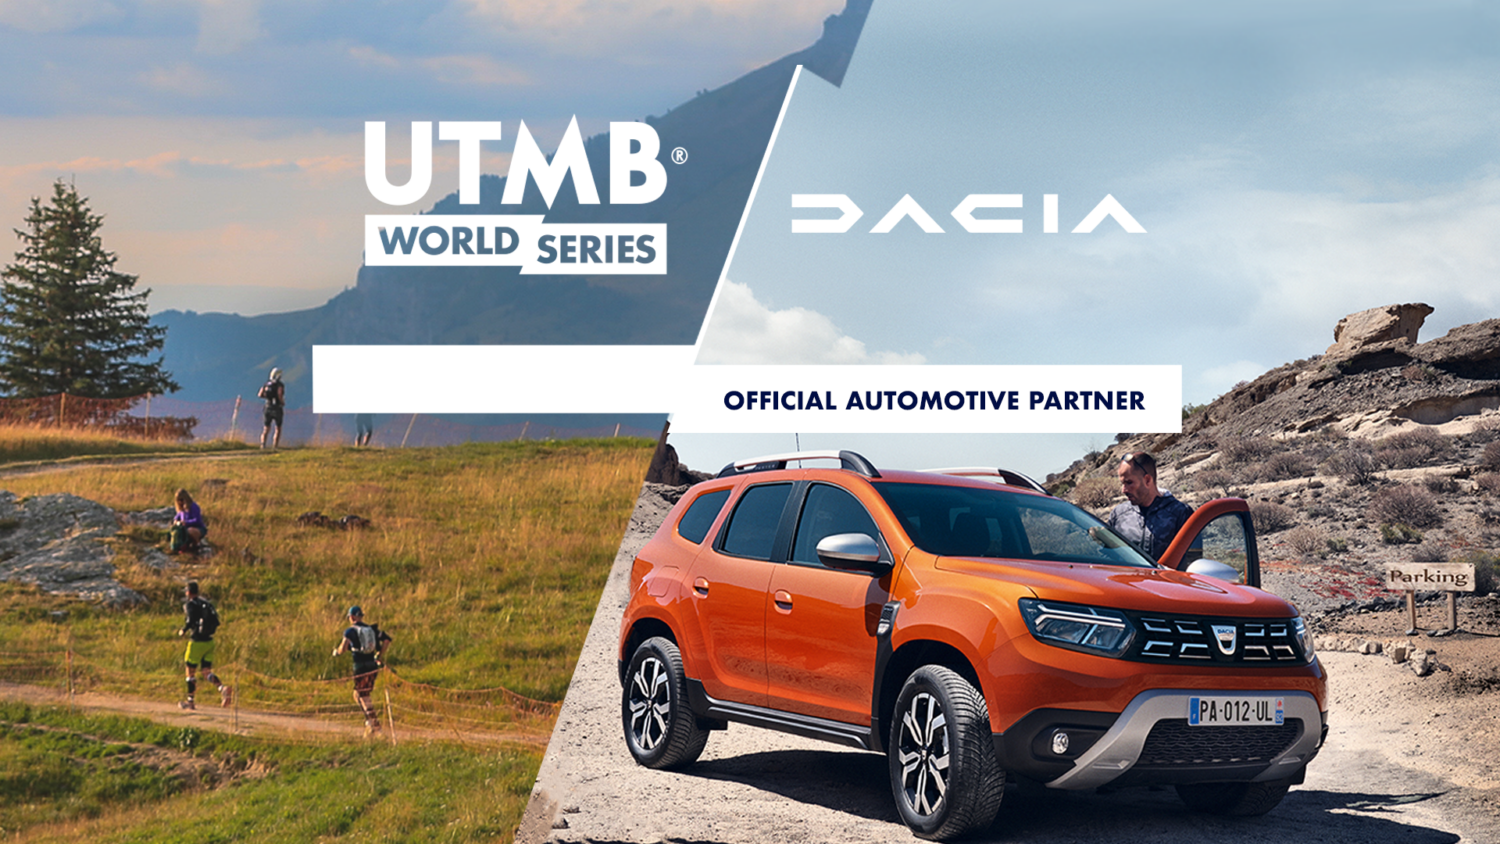 2022 - Dacia et UTMB® World Series annoncent un partenariat de plusieurs années